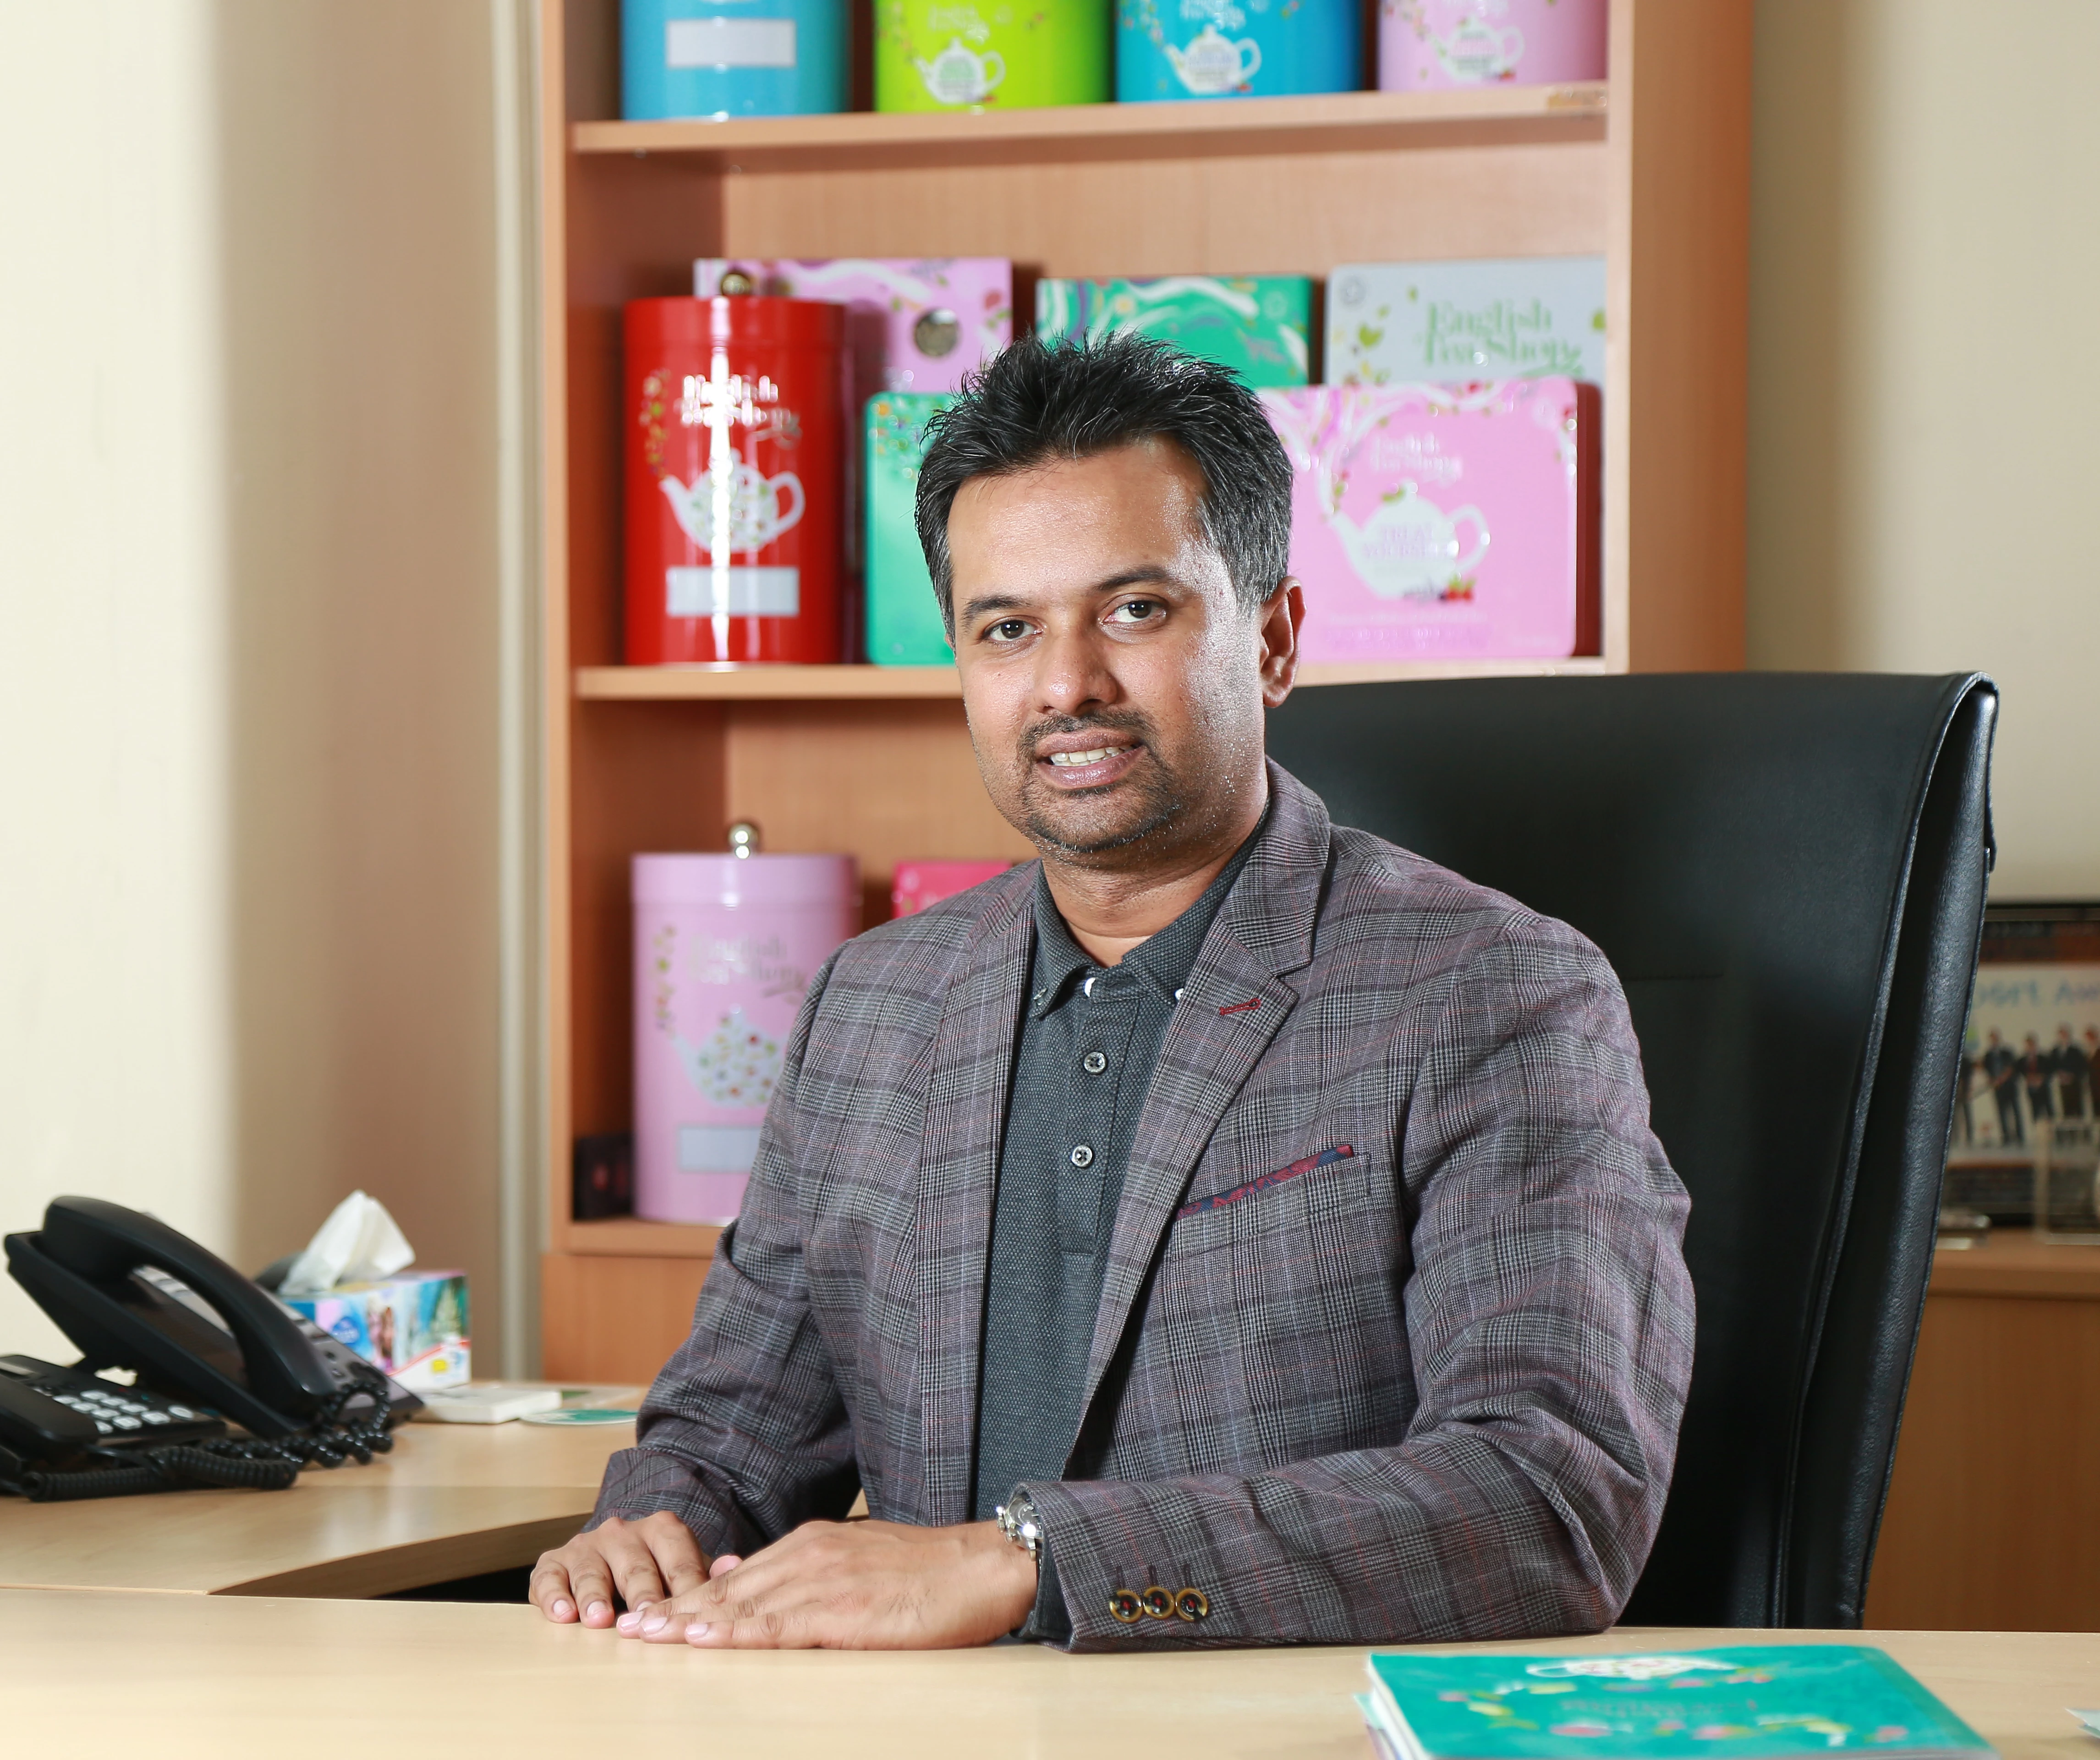 Suranga Herath, CEO, English Tea Shop